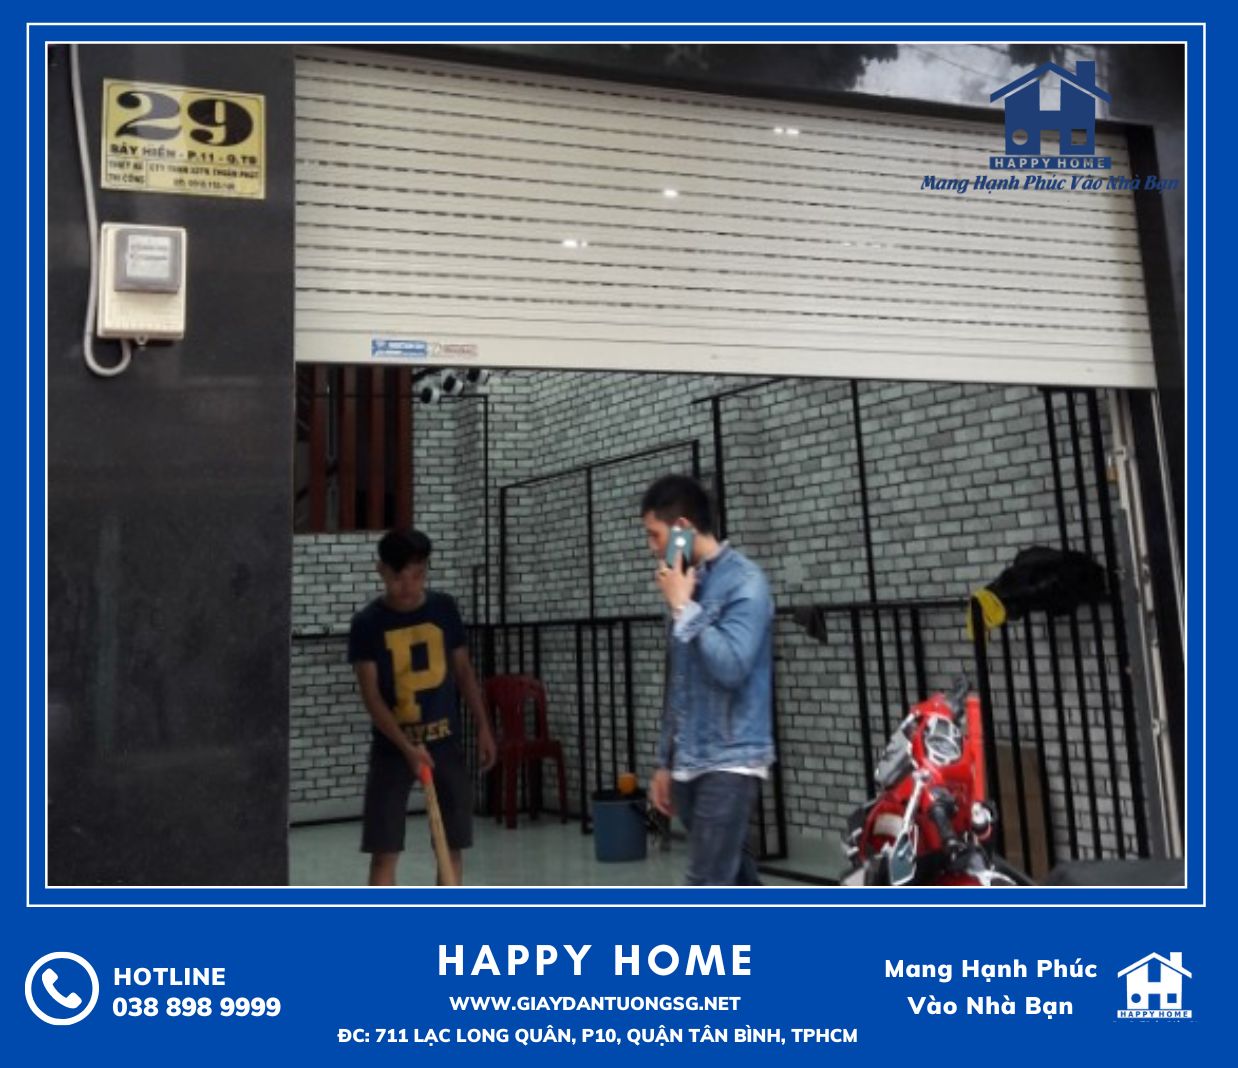 Đội ngũ Happy Home thi công giấy dán tường đẹp cho khách hàng